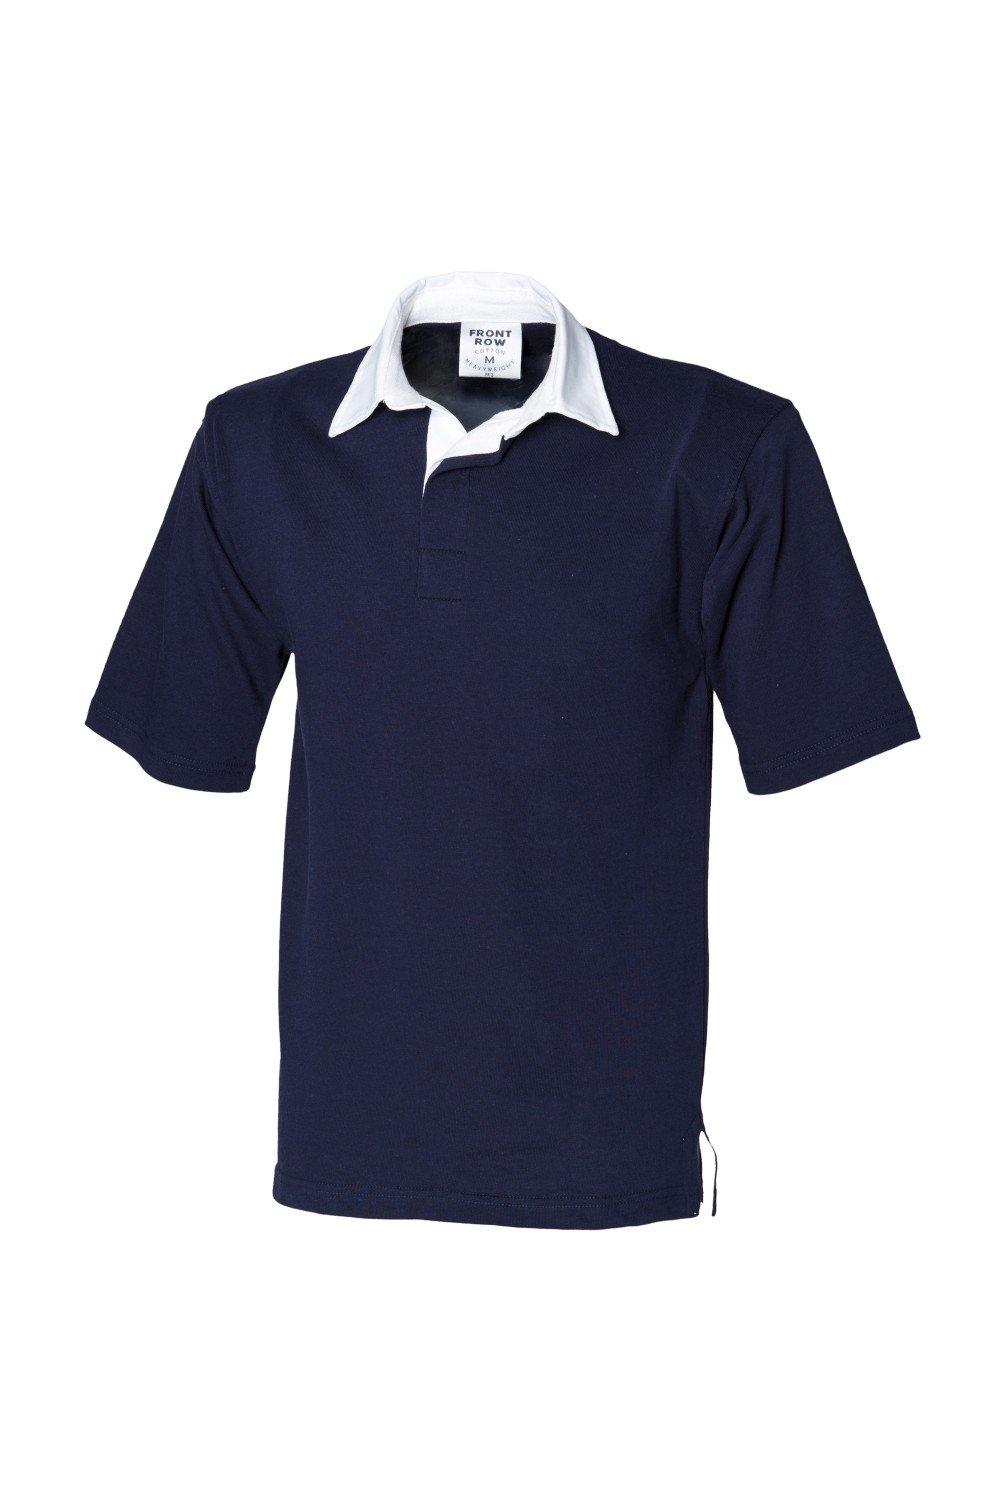 Спортивная рубашка-поло для регби с короткими рукавами Front Row, темно-синий